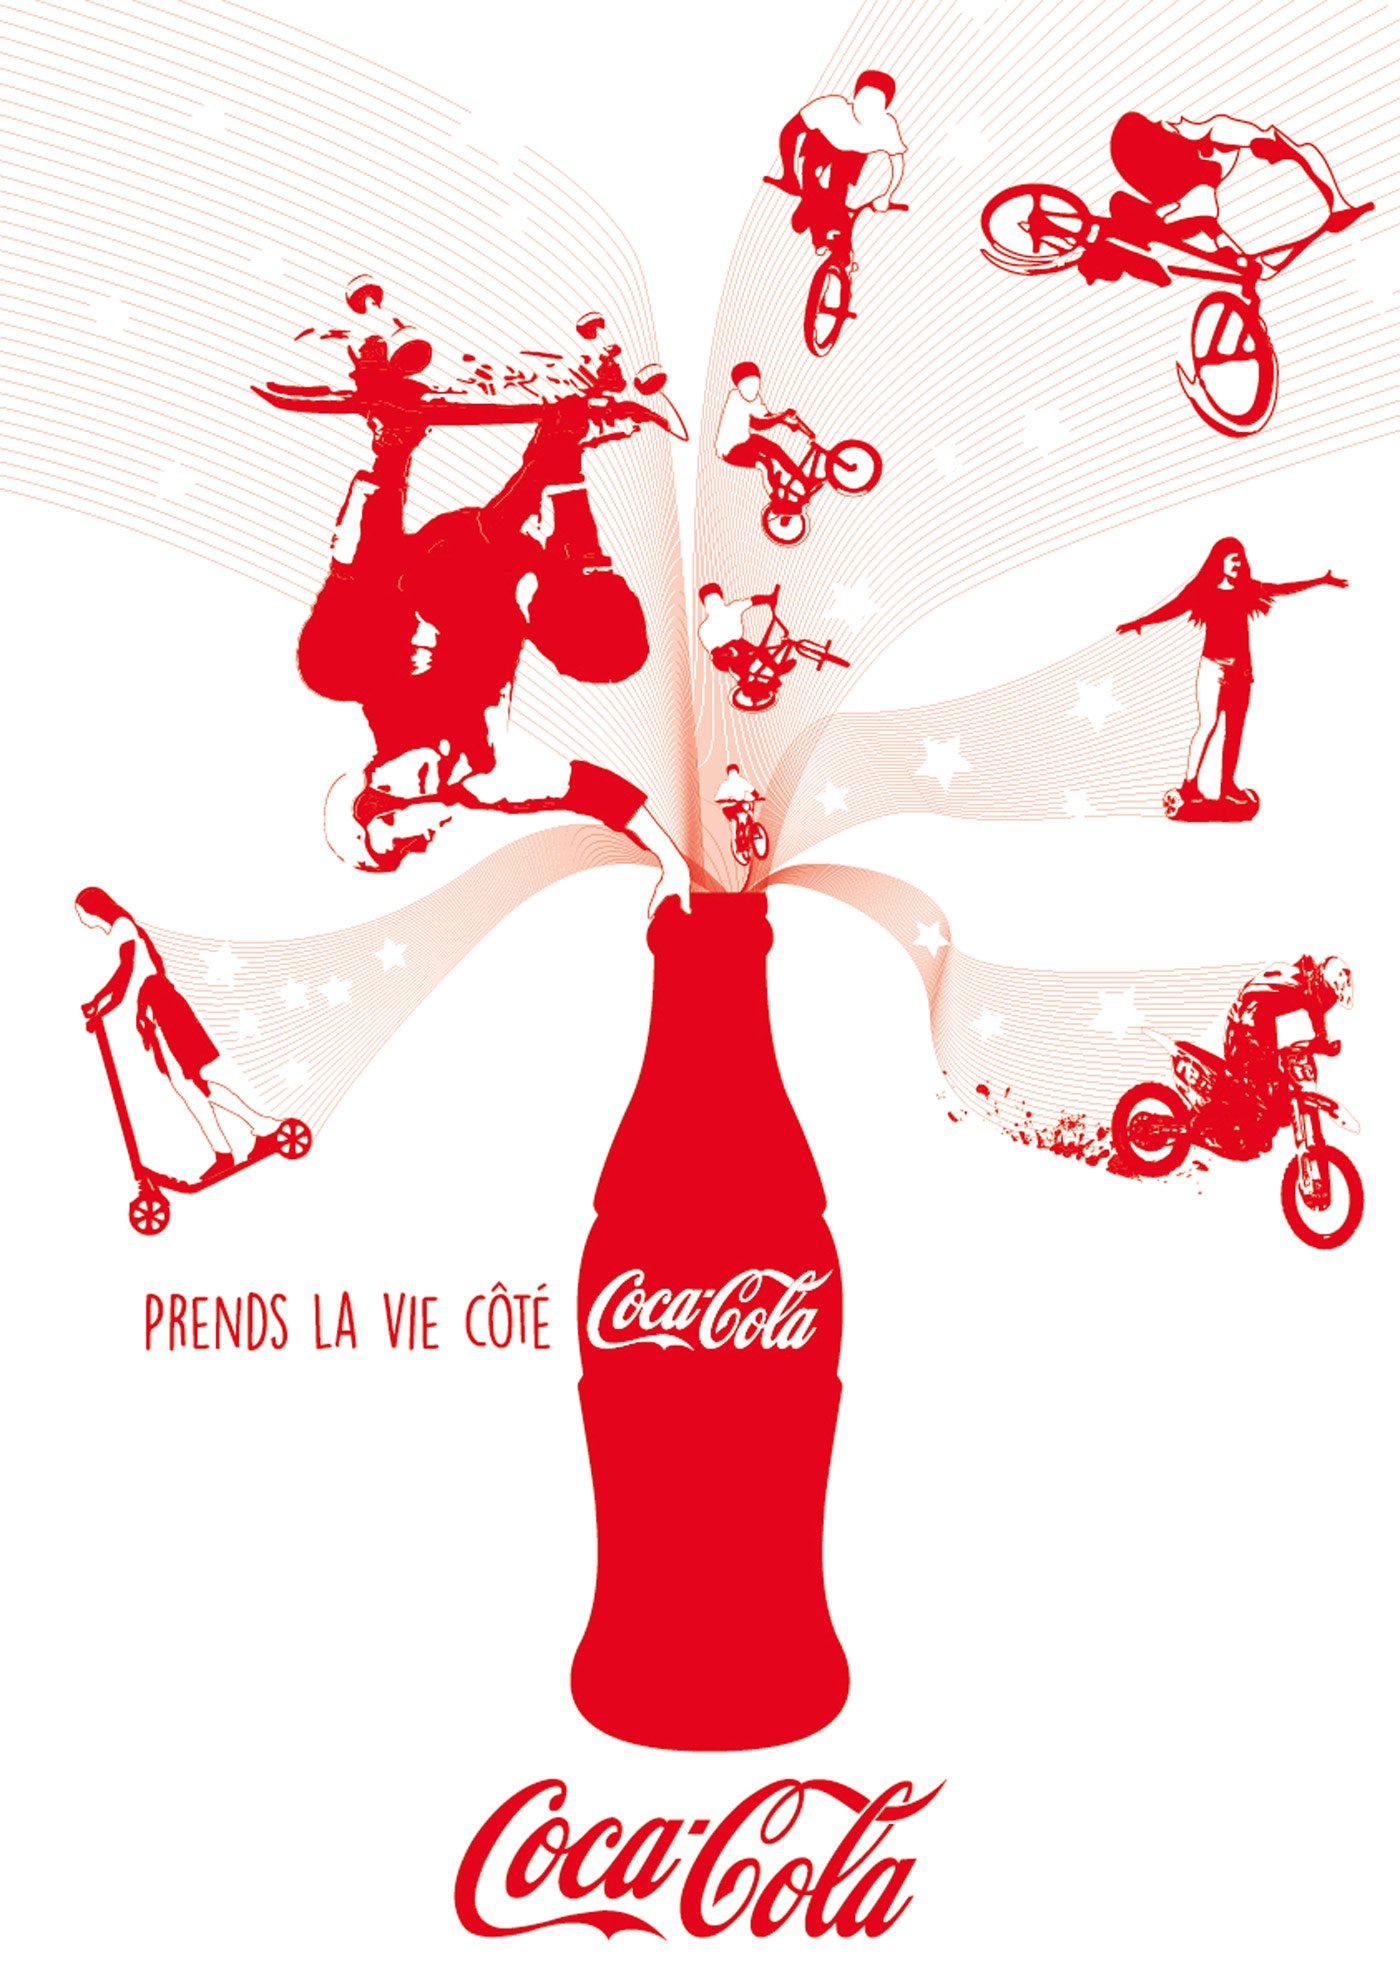 Prends la vie côté Coca-Cola